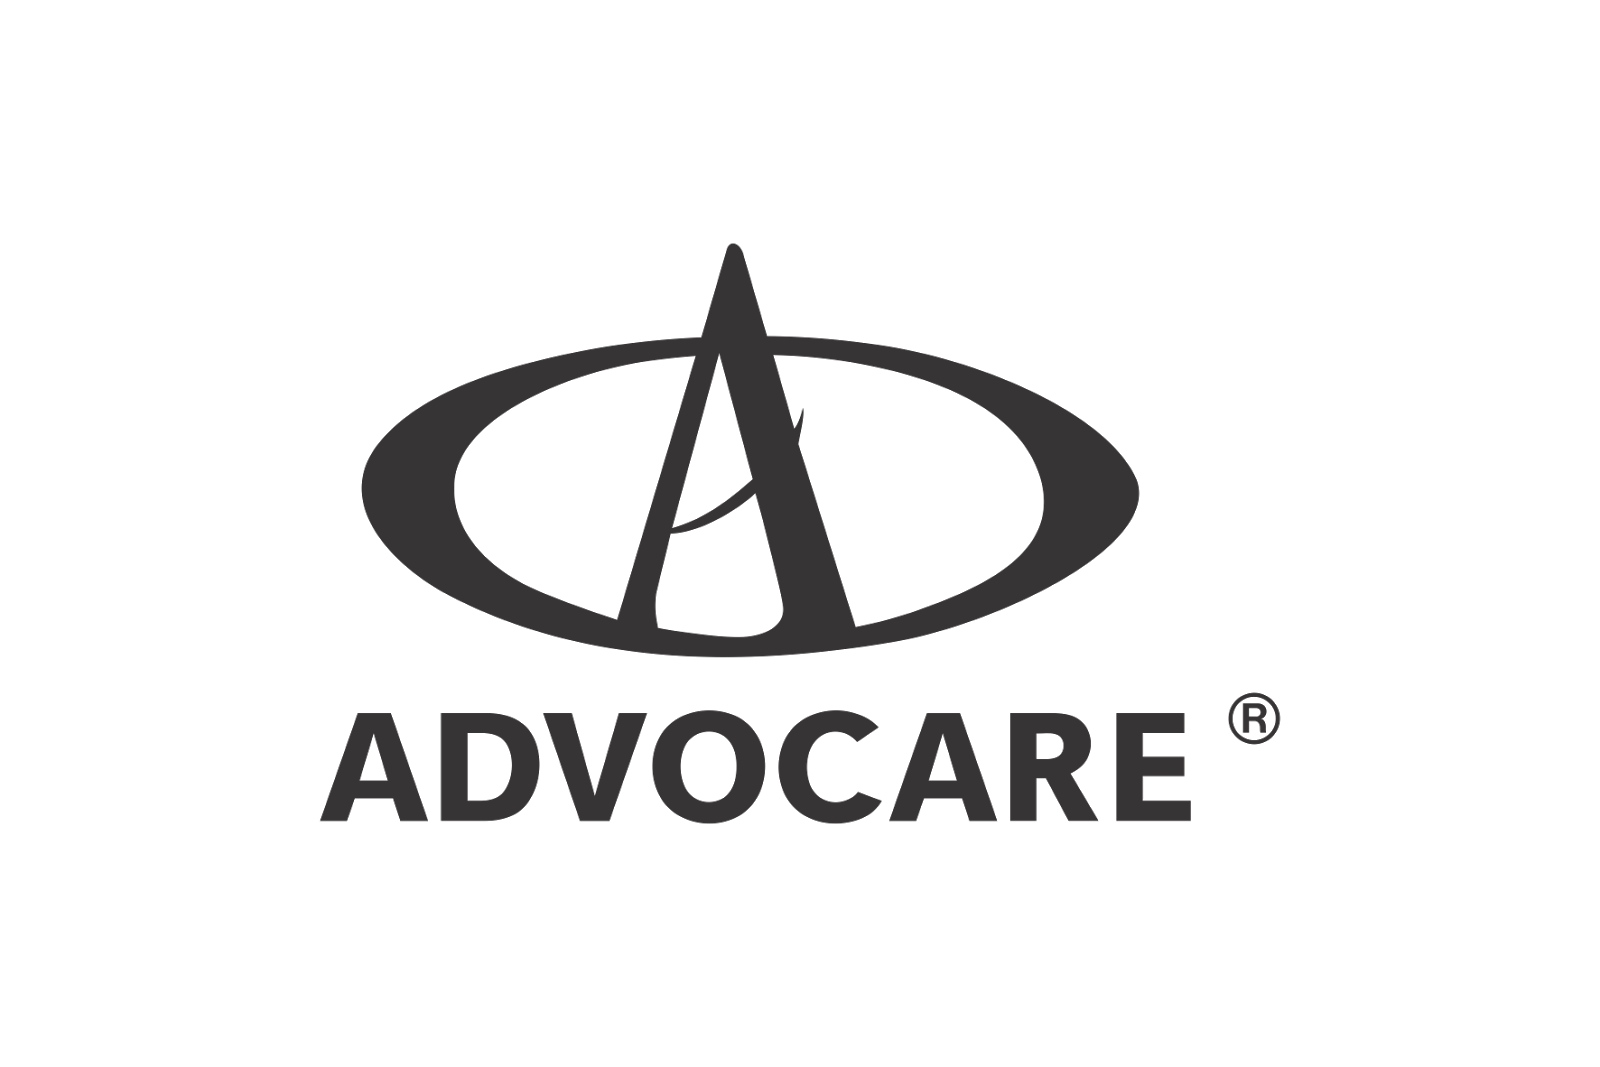 Advocare Logo Vector AI Downl